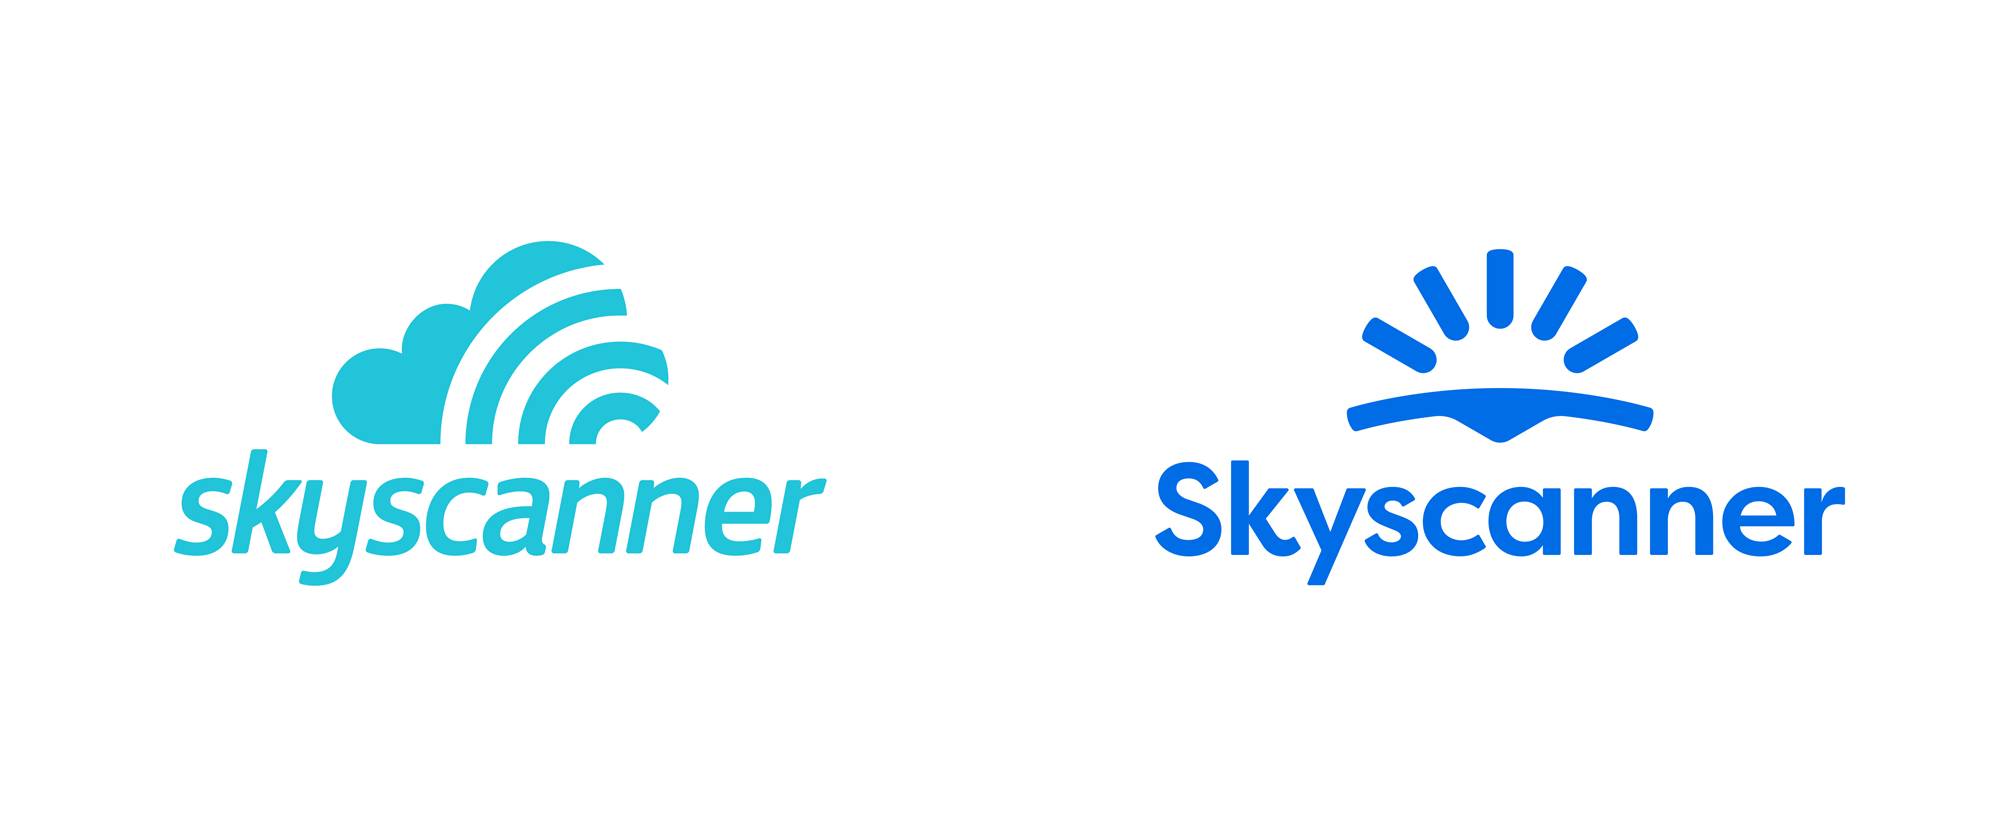 , Skyscanner представил новый фирменный стиль и логотип